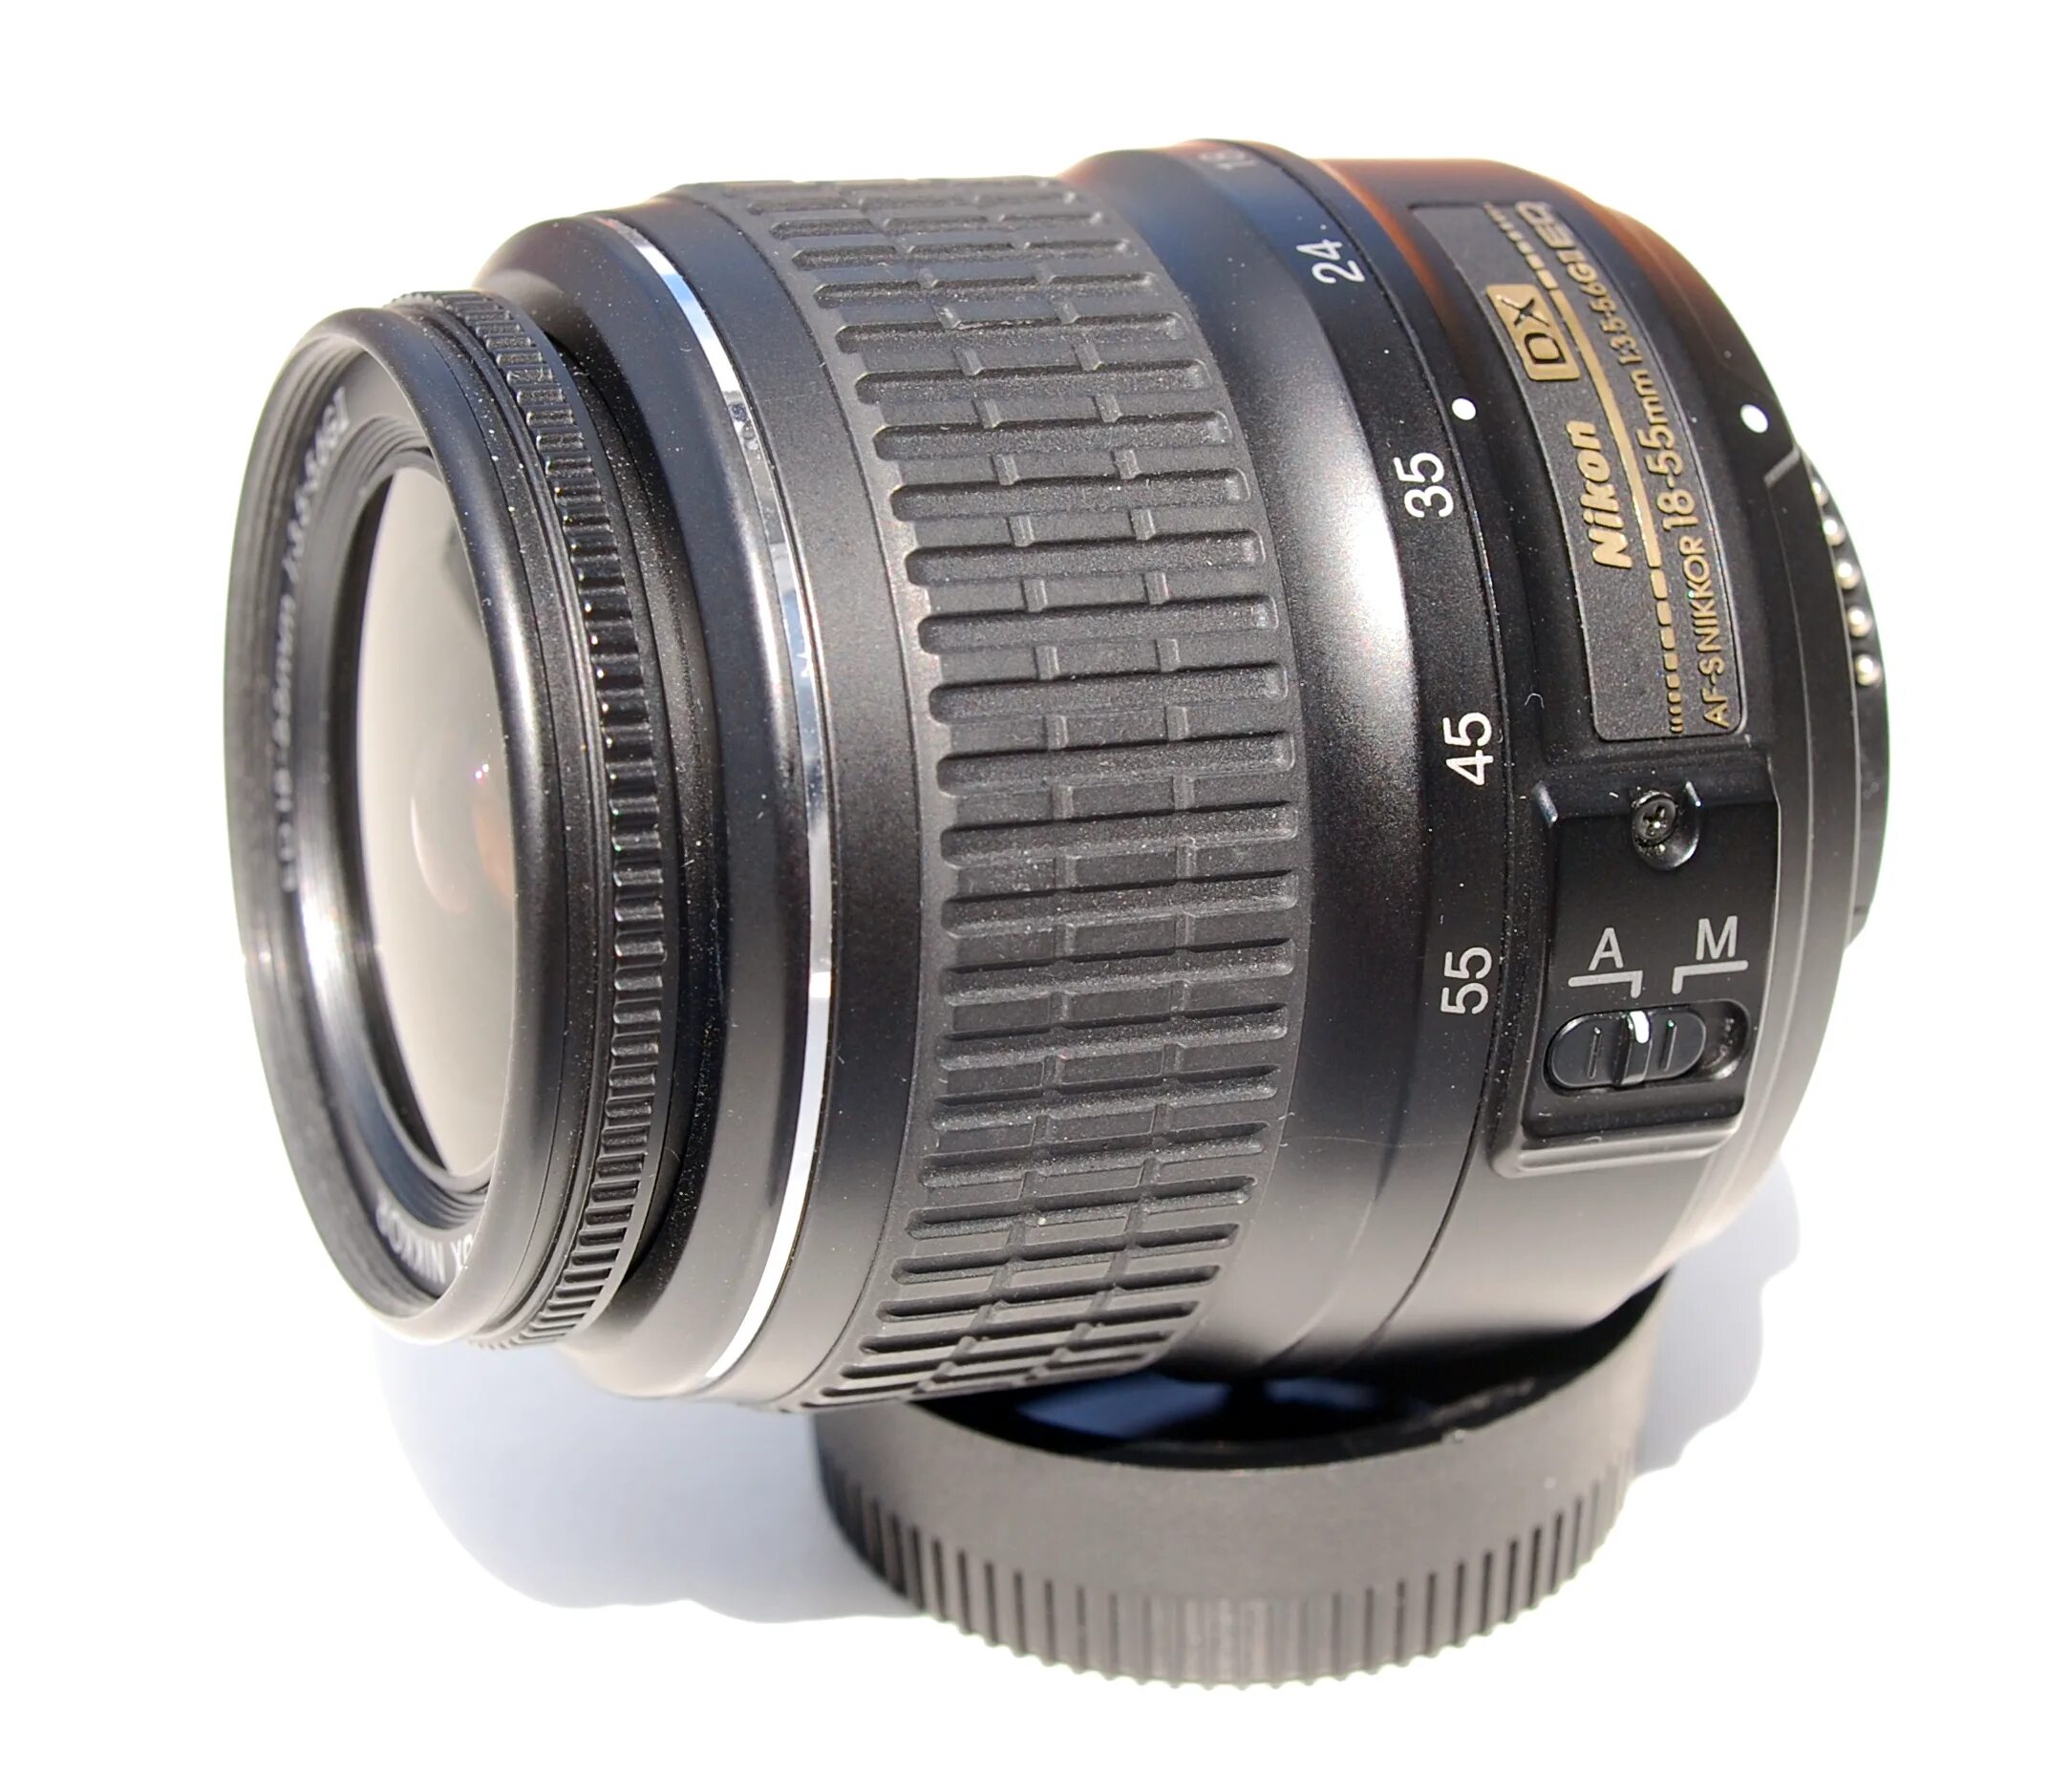 Nikkor 18 55mm vr. Nikon DX af s Nikkor 18 55mm. Nikon DX af-s Nikkor 18-55mm 1 3.5-5.6g. Nikon 18-55mm f/3.5-5.6g af-s VR DX.